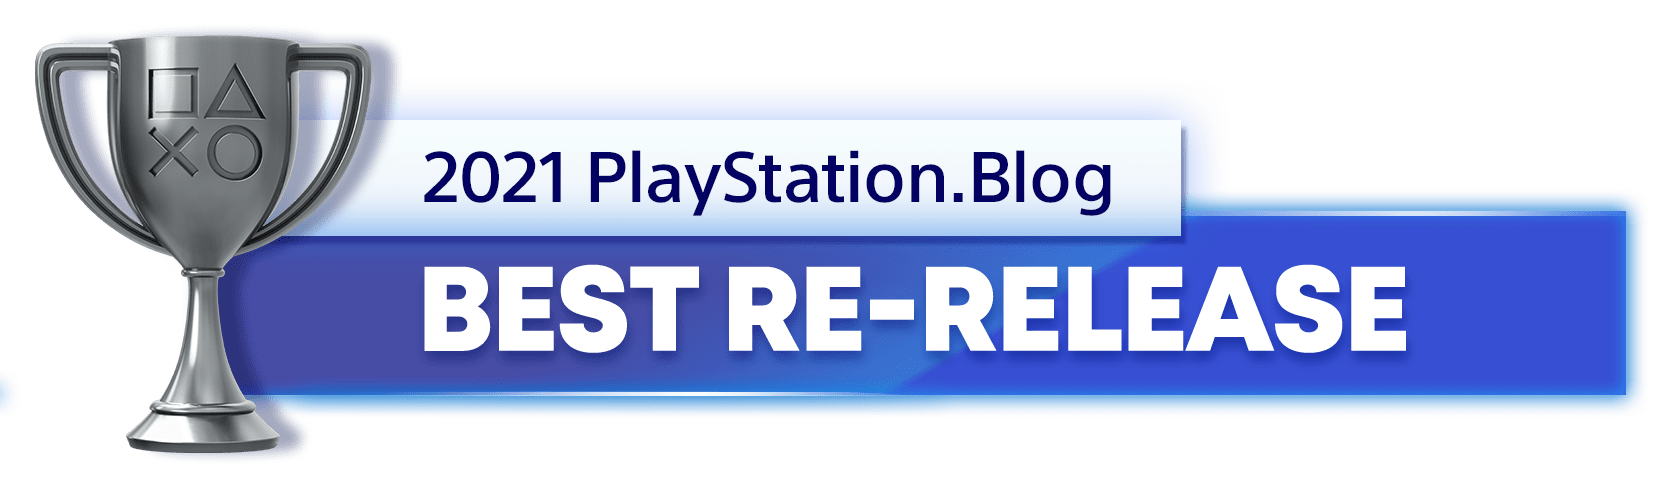 Votação para Jogo do Ano 2021 do PlayStation Blog já está aberta